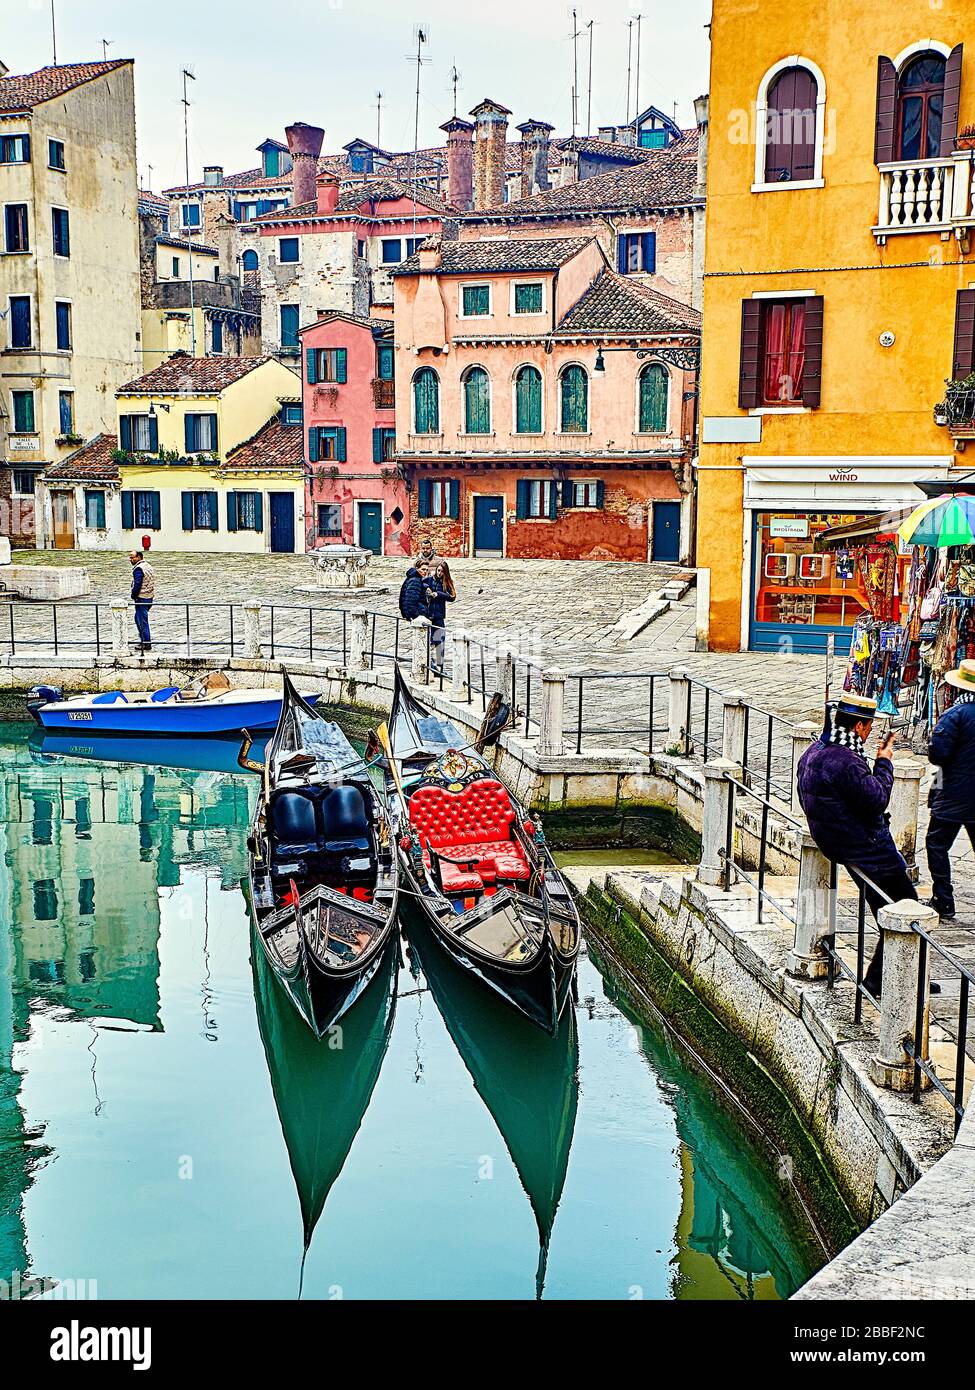 Venedig, die Hauptstadt der norditalienischen Region Venetien, liegt auf 118 kleinen Inseln in einer Lagune in der Adria. Es hat keine Straßen, nur Kanäle, li Stockfoto